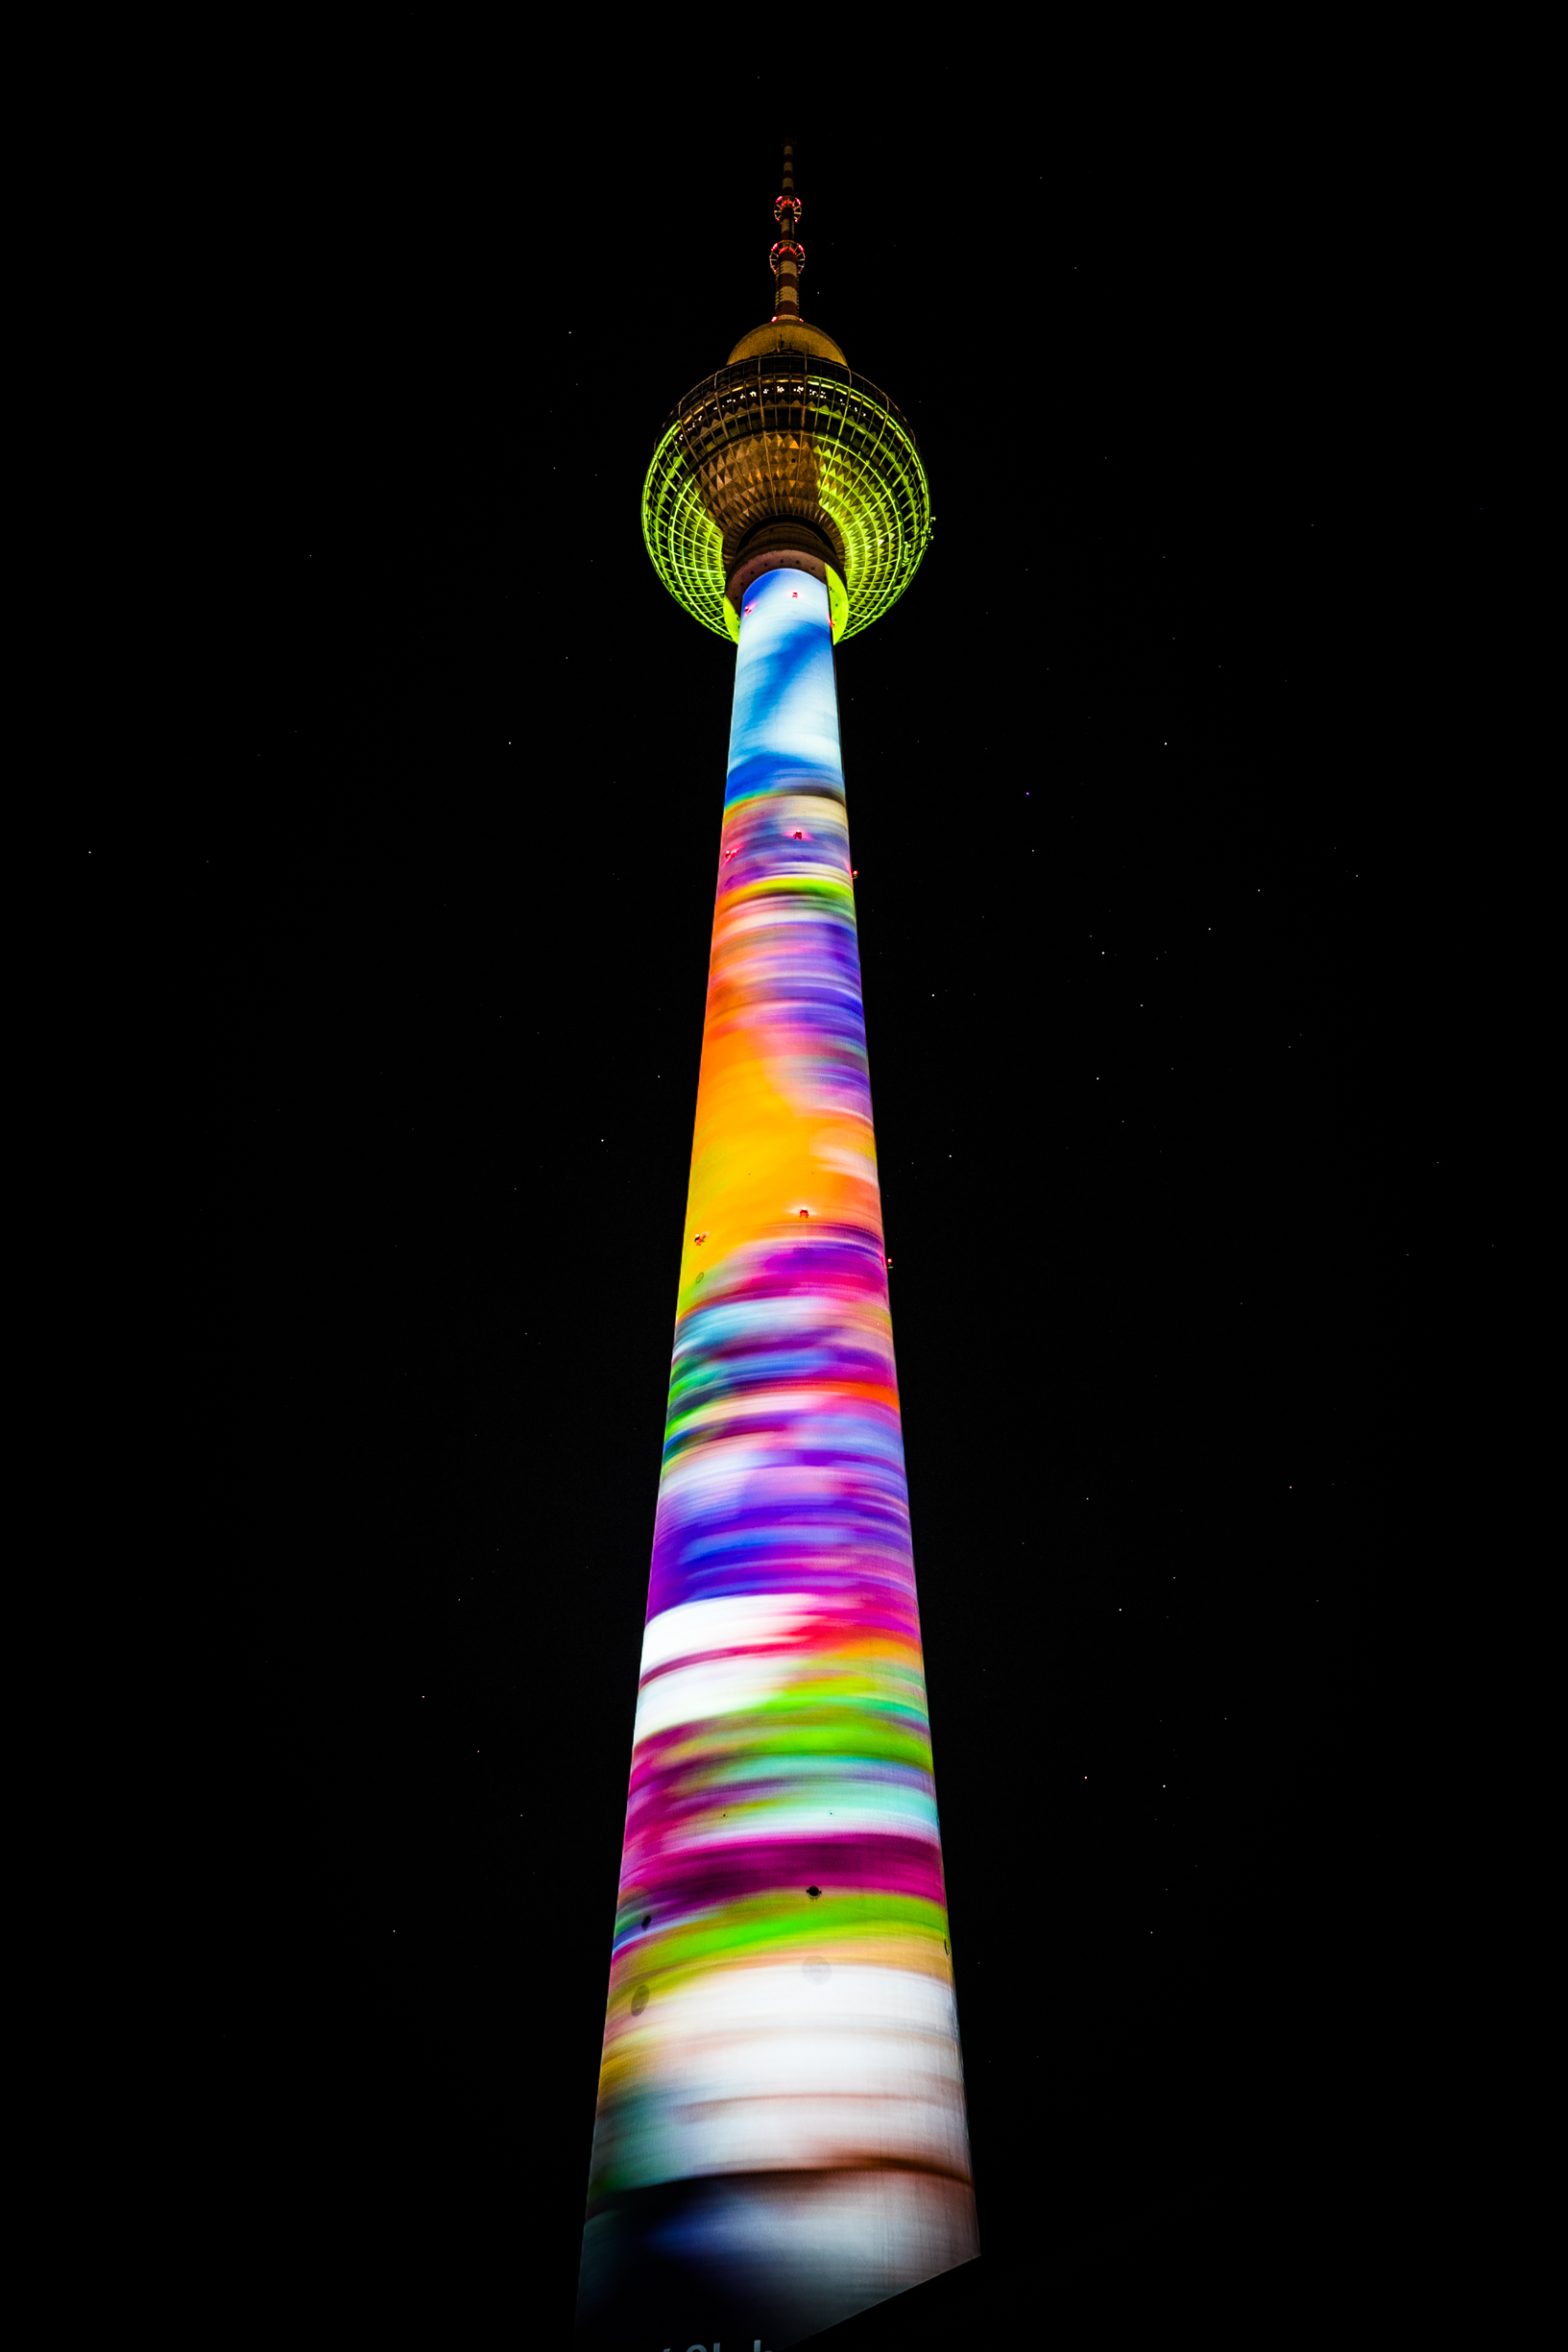 Festival of Lights 2022 in Berlin